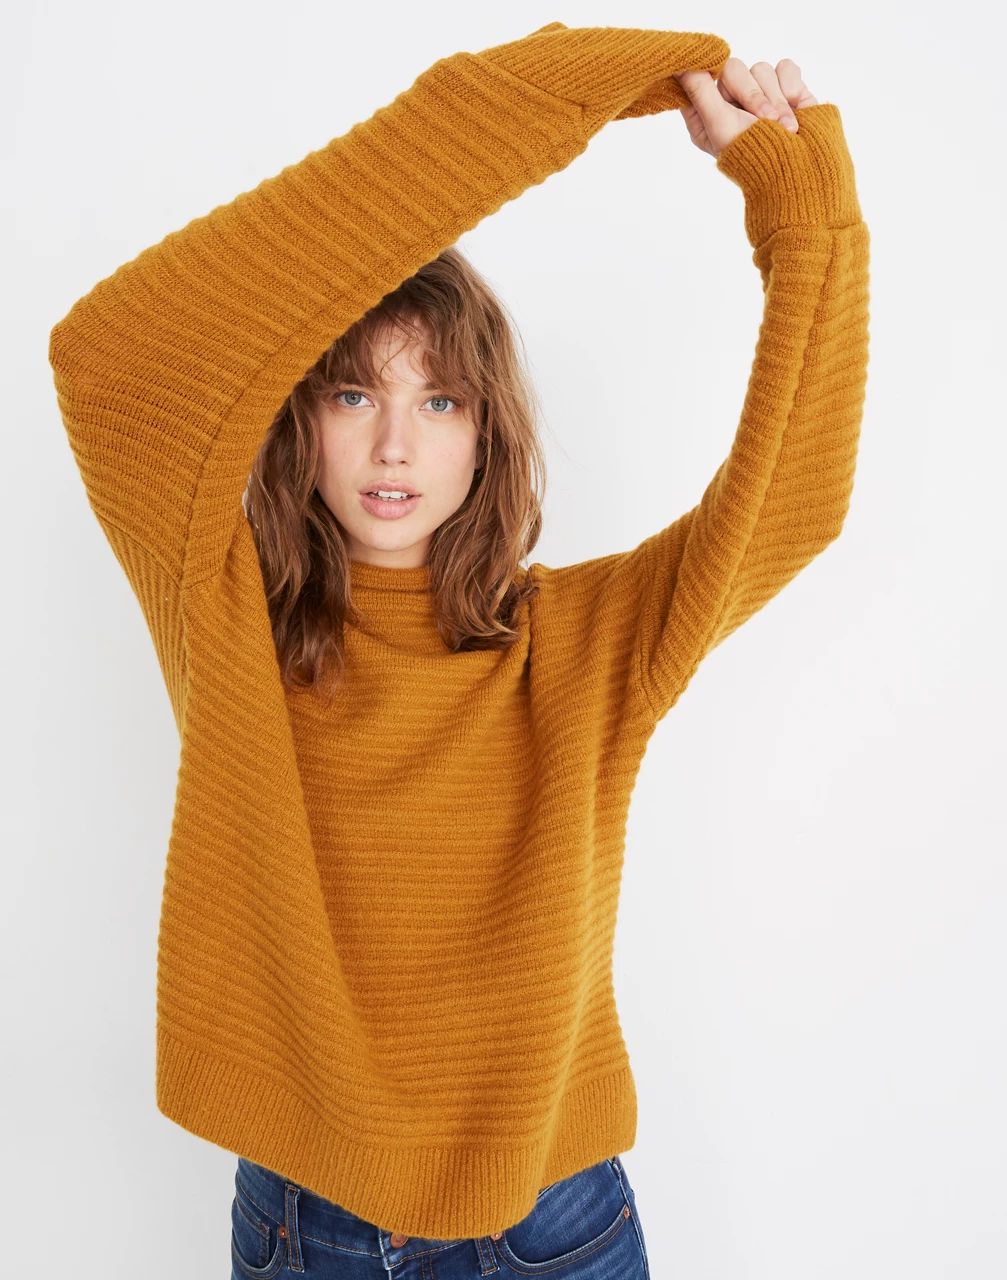 Belmont Mockneck Sweater in Coziest Yarn | Madewell